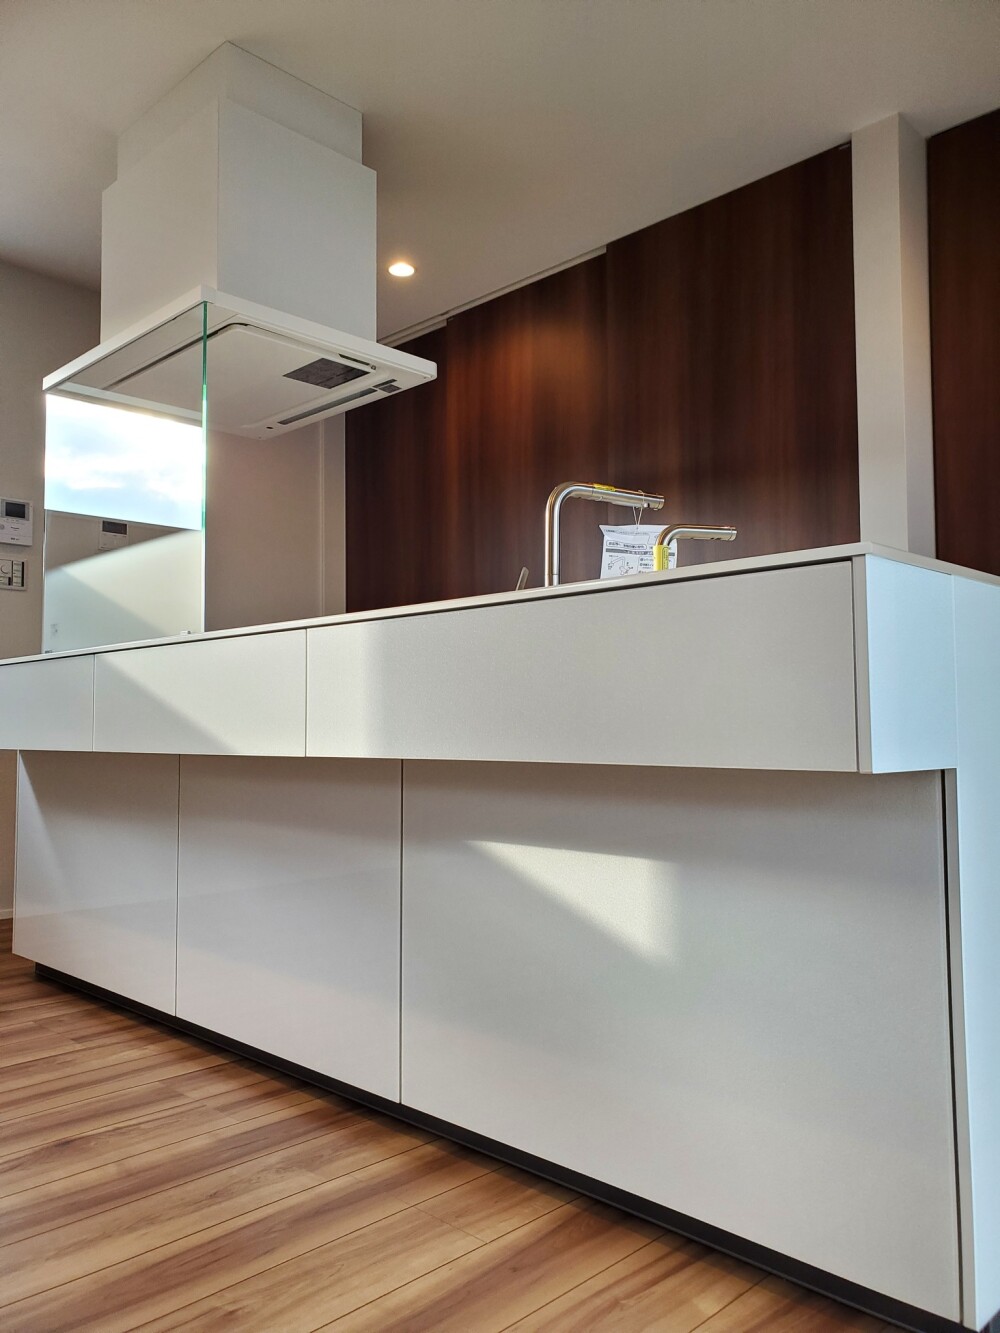 アイランド型キッチンも間取りと暮らしの関係性から簡易的なカウンターキッチンとしてデザインの幅を持つ暮らしの質を向上させる居心地の良い空間デザイン